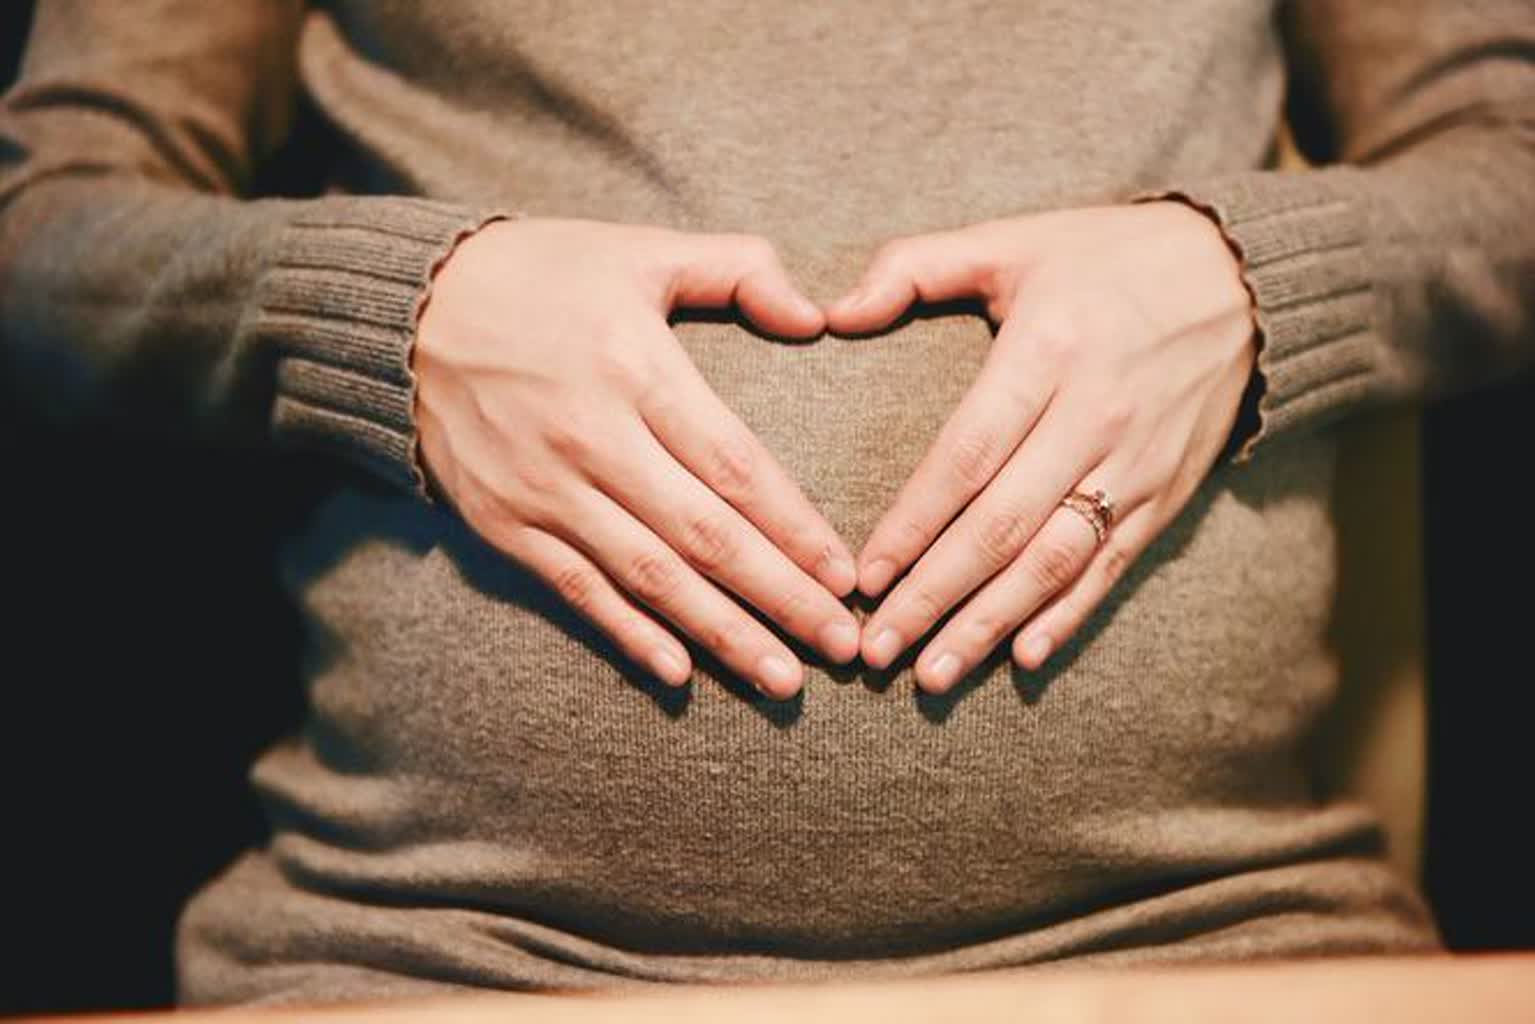 Mama însărcinată la volan – centurile de siguranță salvează viața femeilor însărcinate – Bolsky Radio Laplin